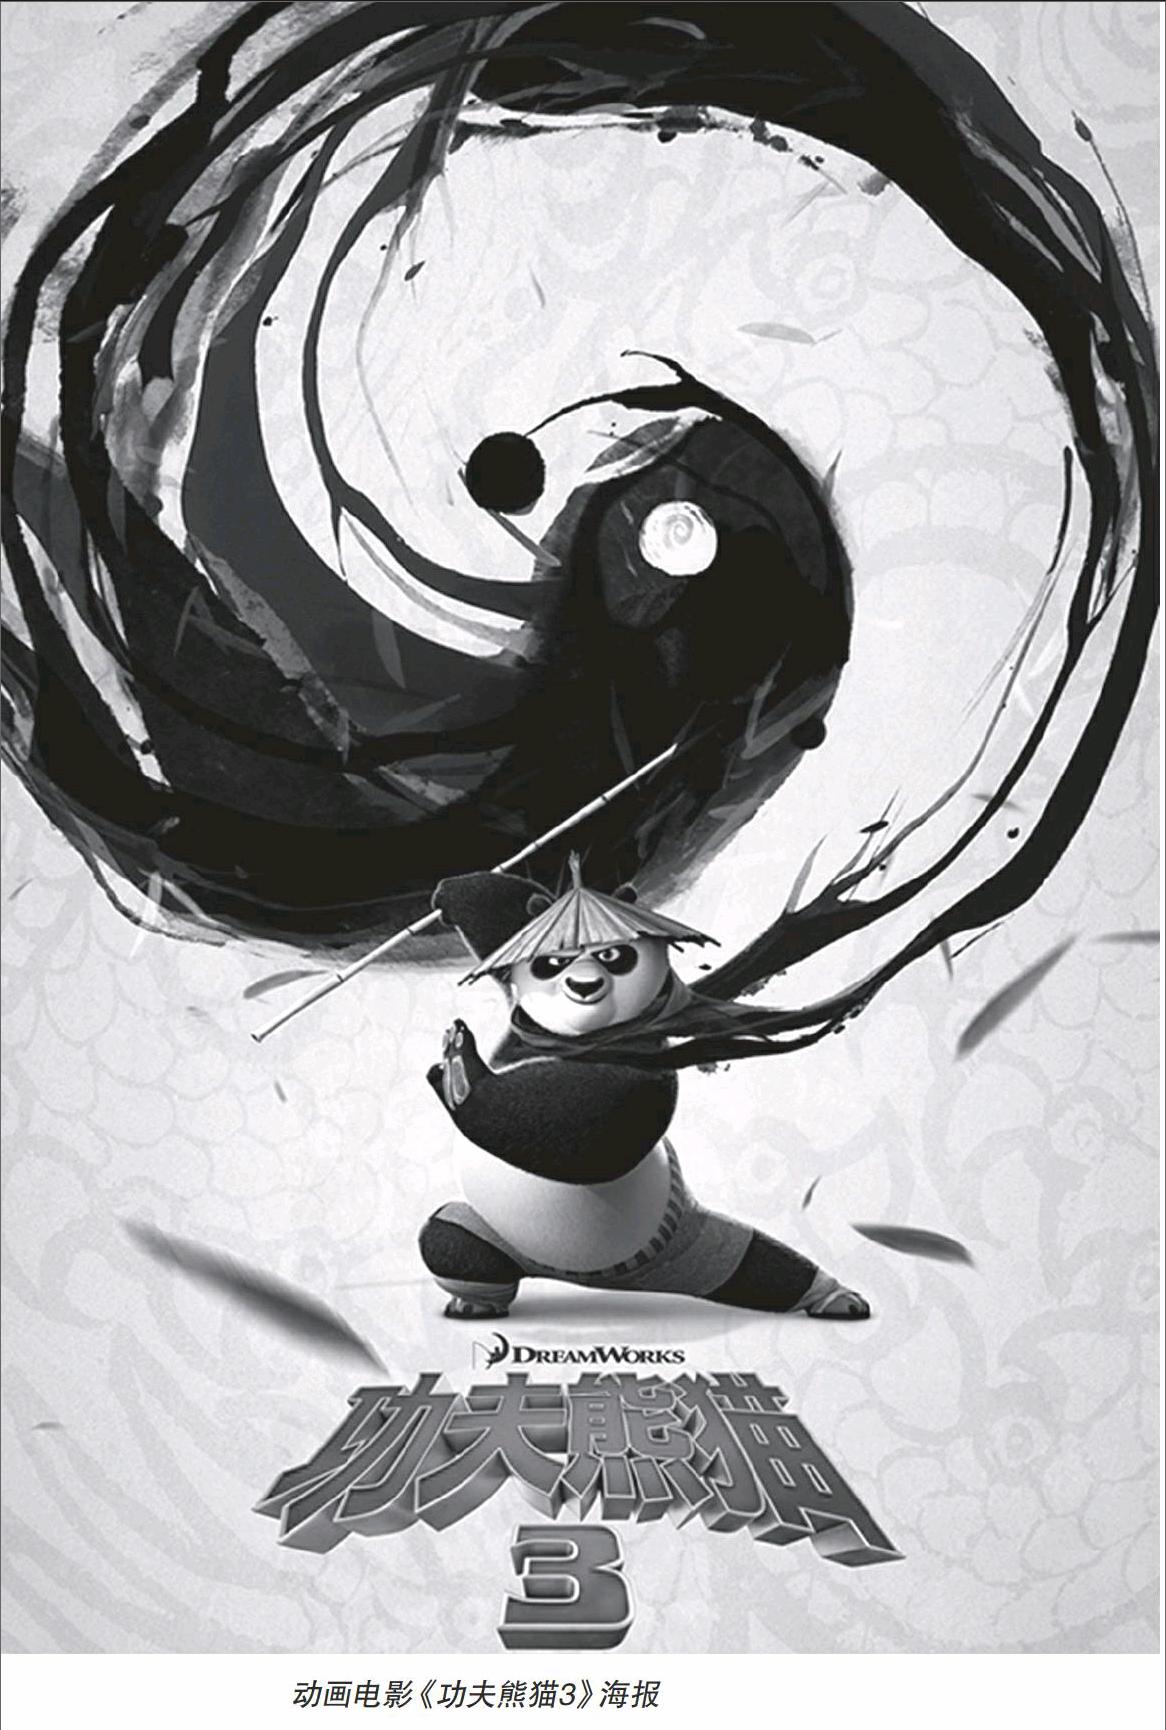 《功夫熊猫3》的看点与艺术缺失